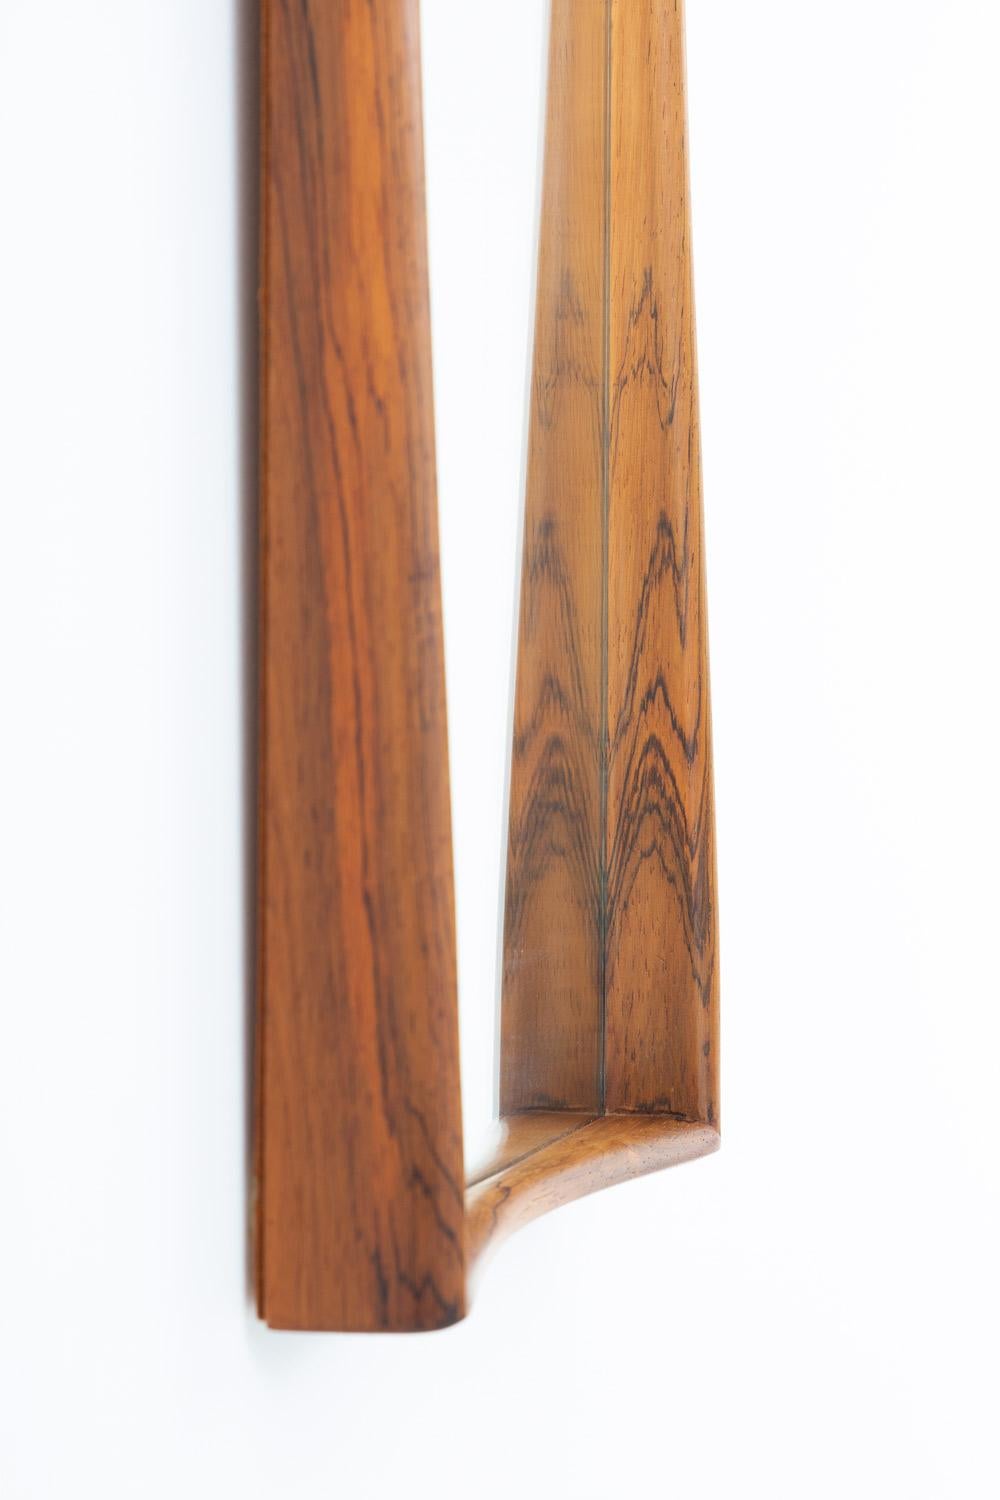 Rechteckiger Spiegel Nr. 7078 aus Palisanderholz von Rimbert Sandholt für Glas & Trä, Schweden.
Dieser Spiegel ist von hoher Qualität in der Konstruktion und hat einen schön geformten Rahmen.
Ein passender Beistelltisch ist ebenfalls